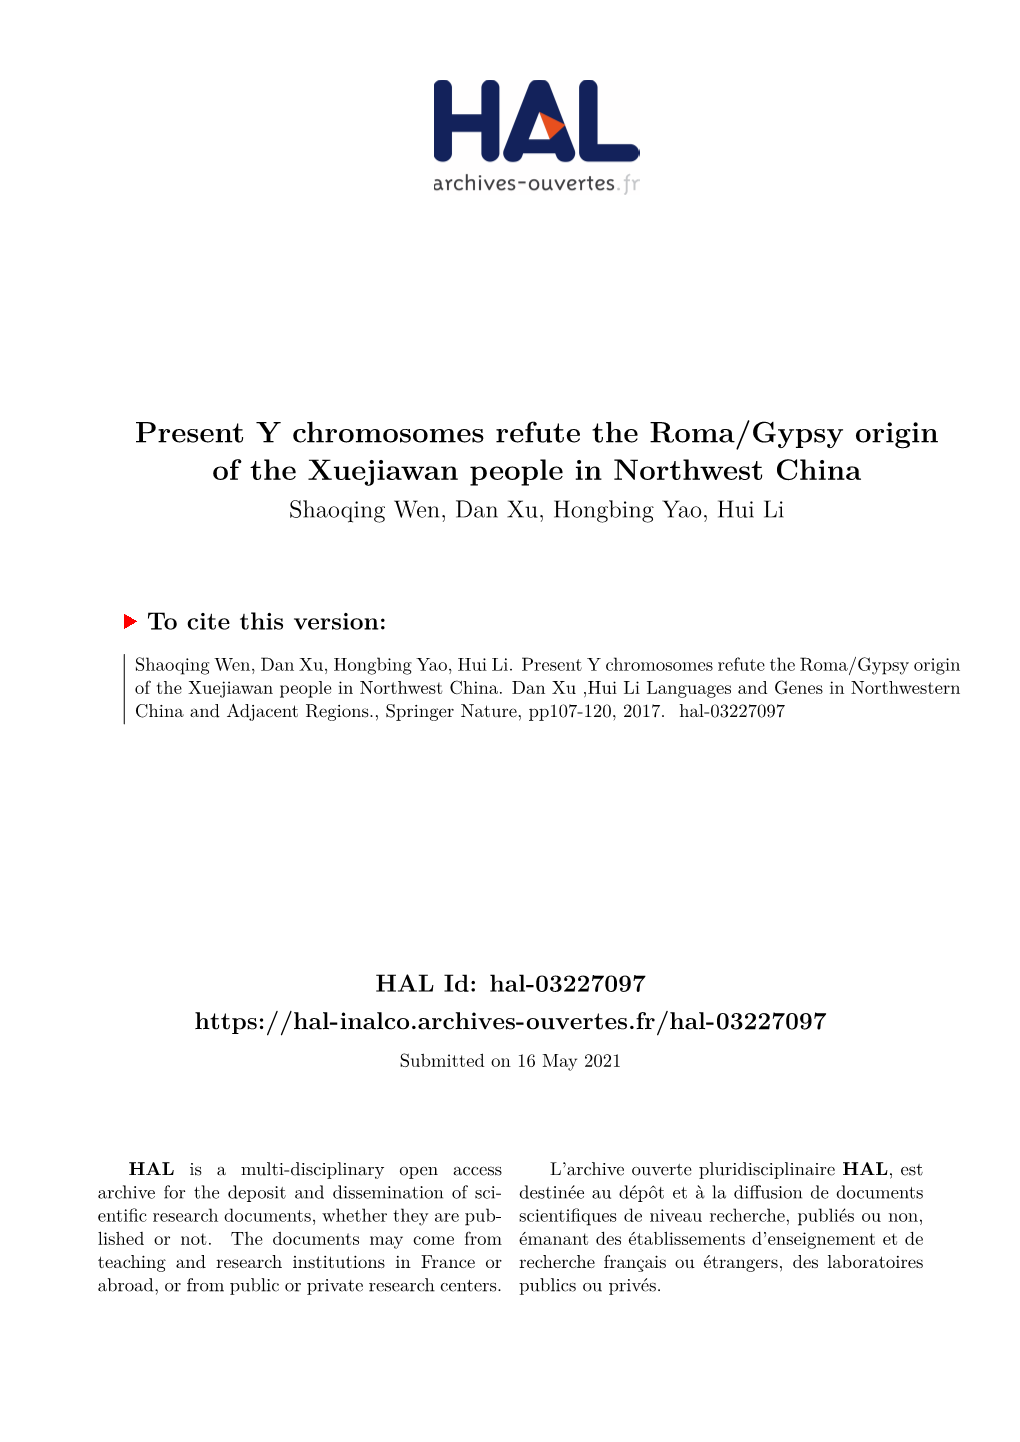 Present Y Chromosomes Refute the Roma/Gypsy Origin of the Xuejiawan People in Northwest China Shaoqing Wen, Dan Xu, Hongbing Yao, Hui Li